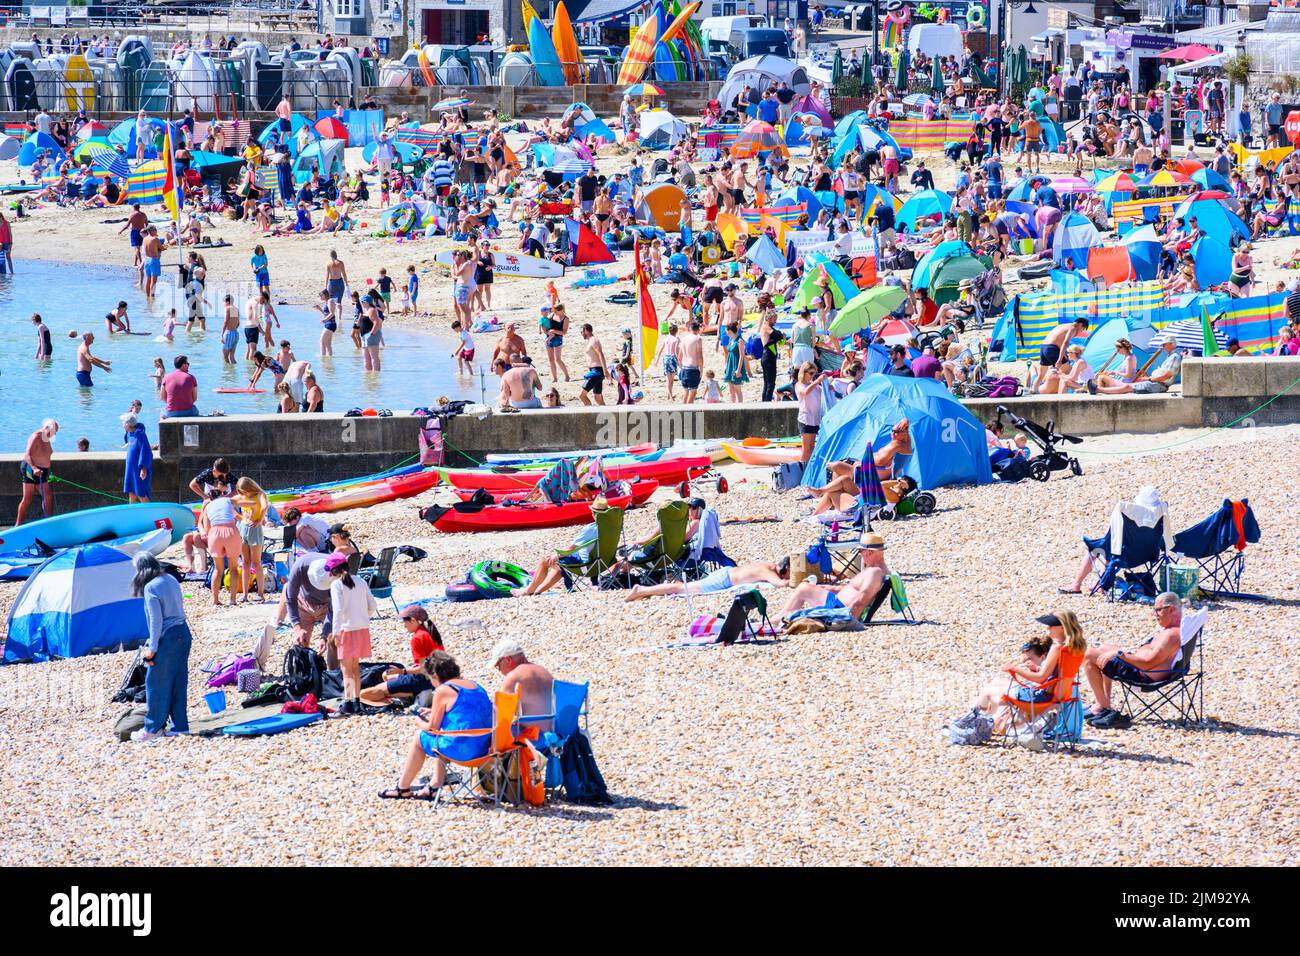 Lyme Regis, Dorset, Reino Unido. 5th de Ago de 2022. Clima en el Reino Unido: Las multitudes de turistas y bañistas acuden a la playa para disfrutar del sol abrasador en la localidad costera de Lyme Regis. Crédito: Celia McMahon/Alamy Live News Foto de stock